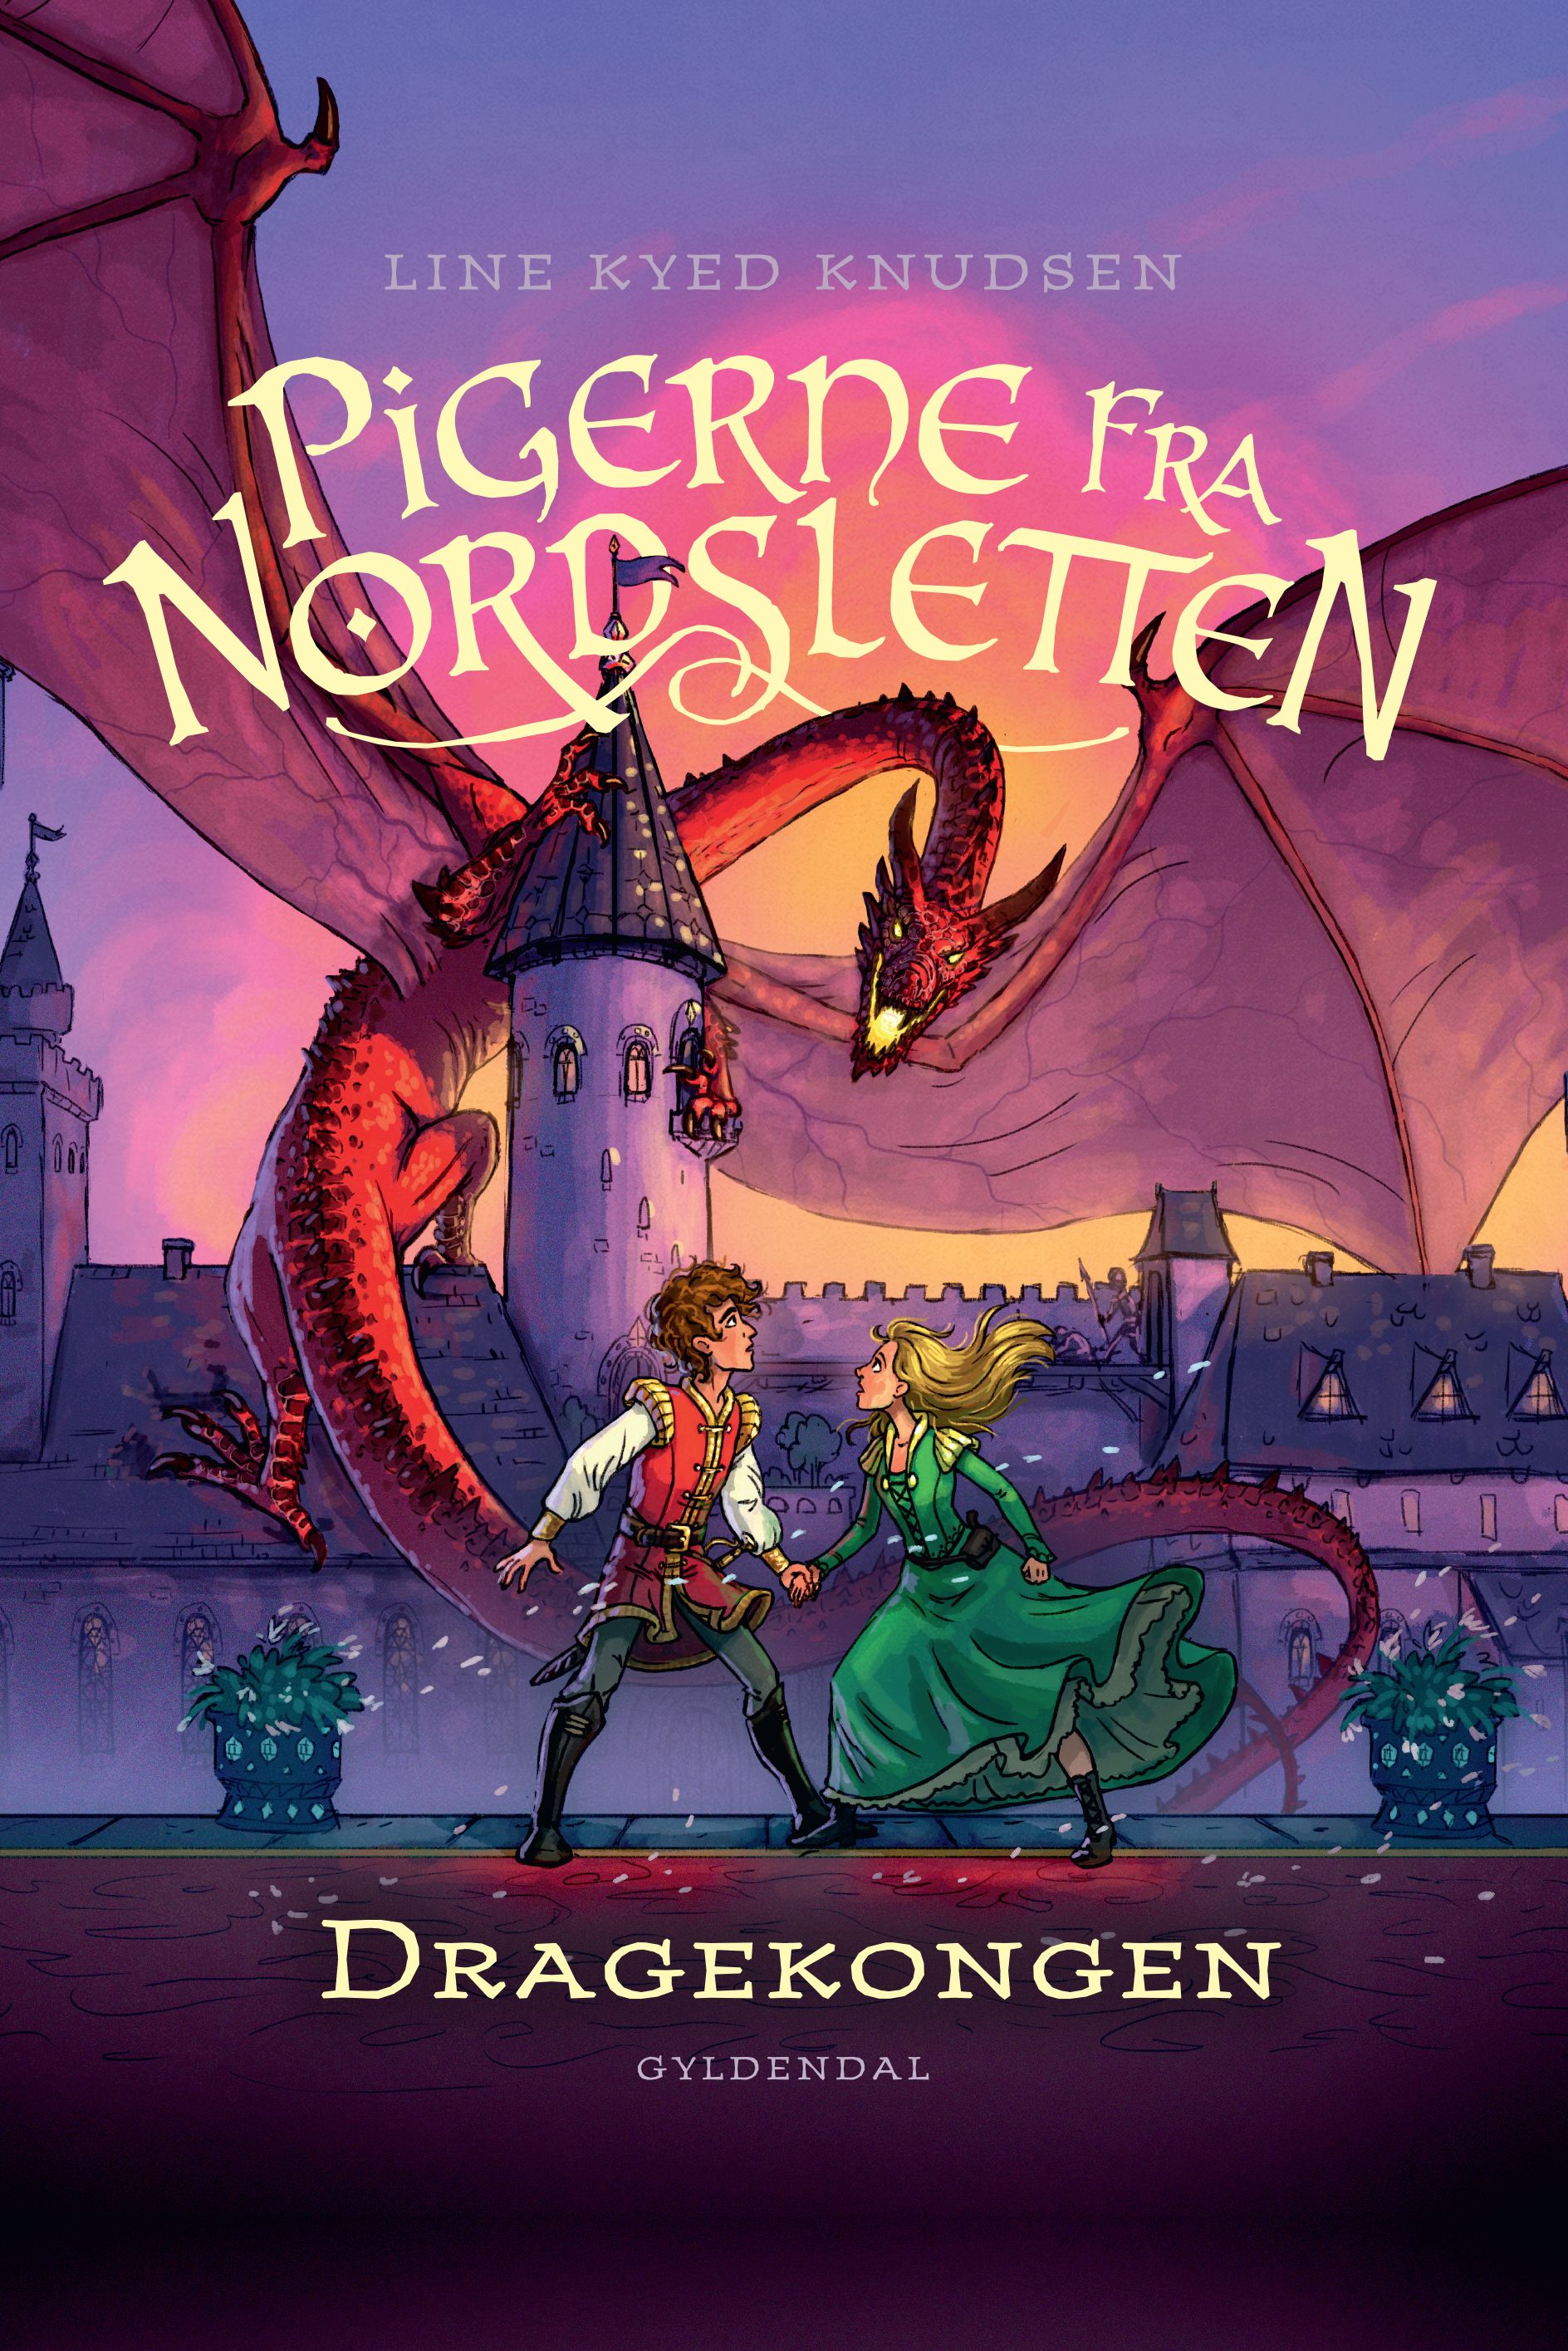 Pigerne fra Nordsletten 5 - Dragekongen, eBook by Line Kyed Knudsen